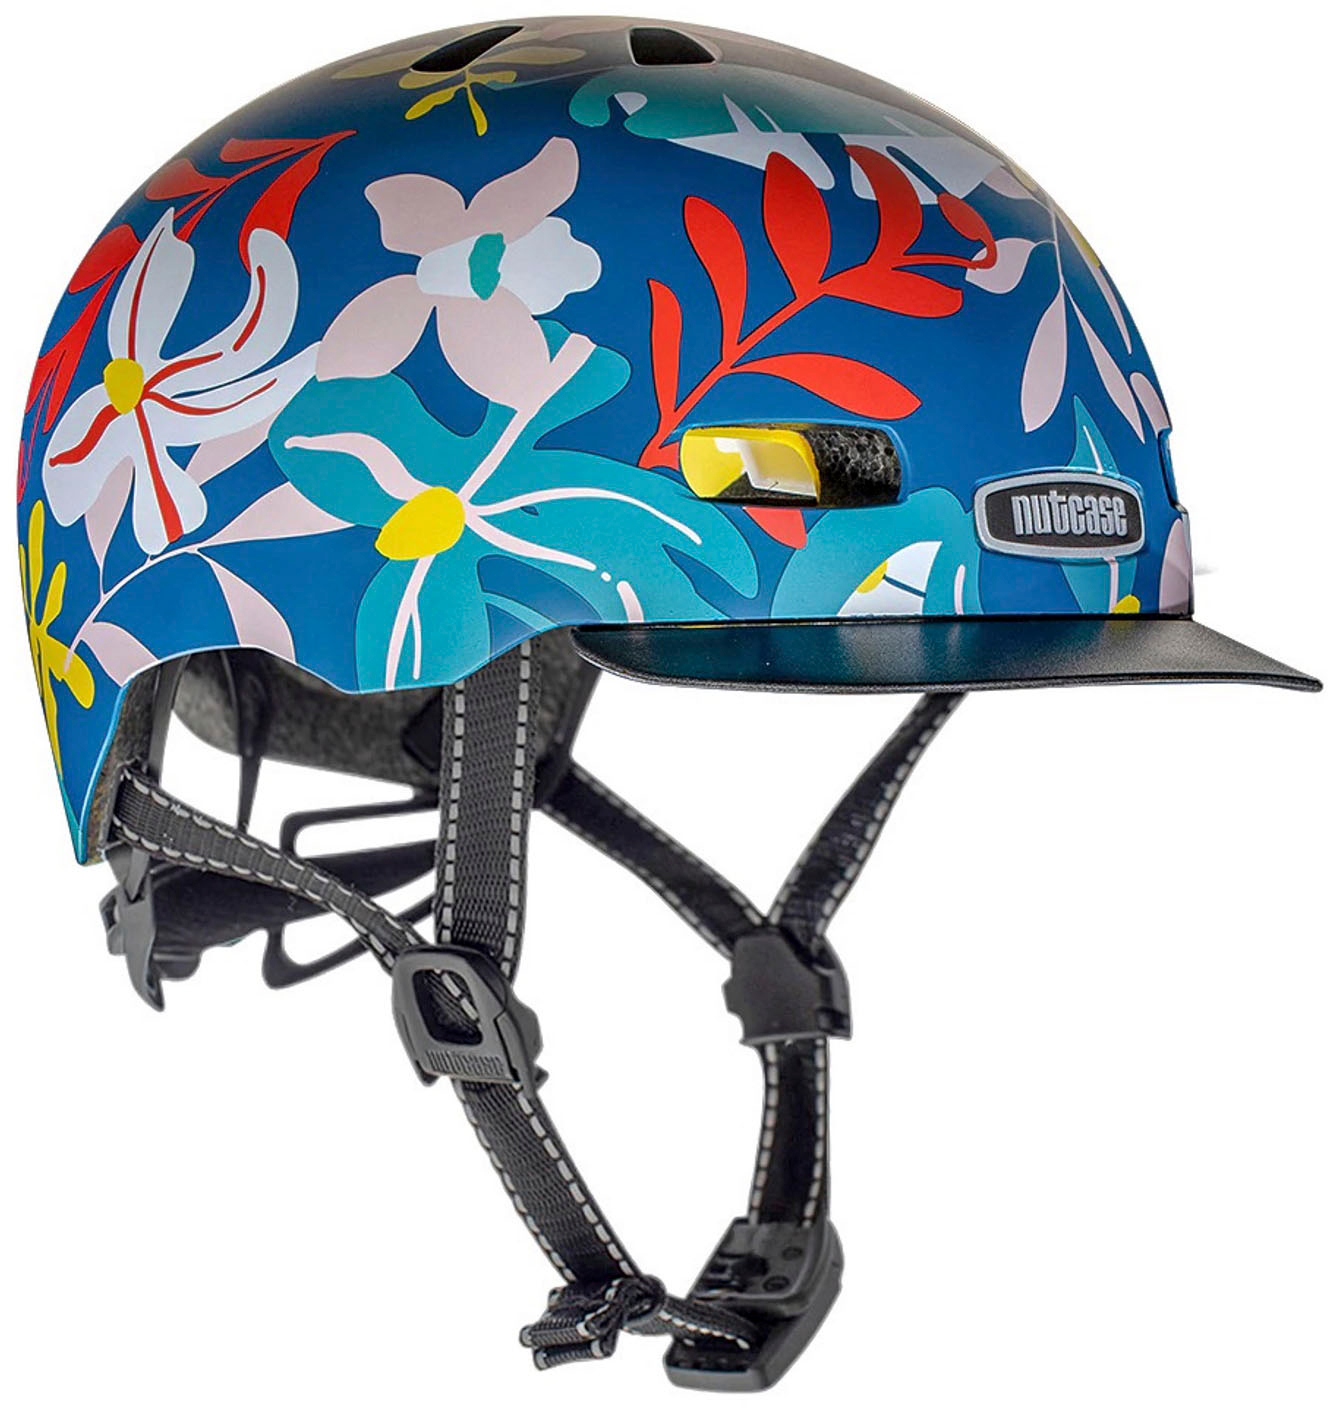 Nutcase - Street Bike Helmet with MIPS - Tweet Me